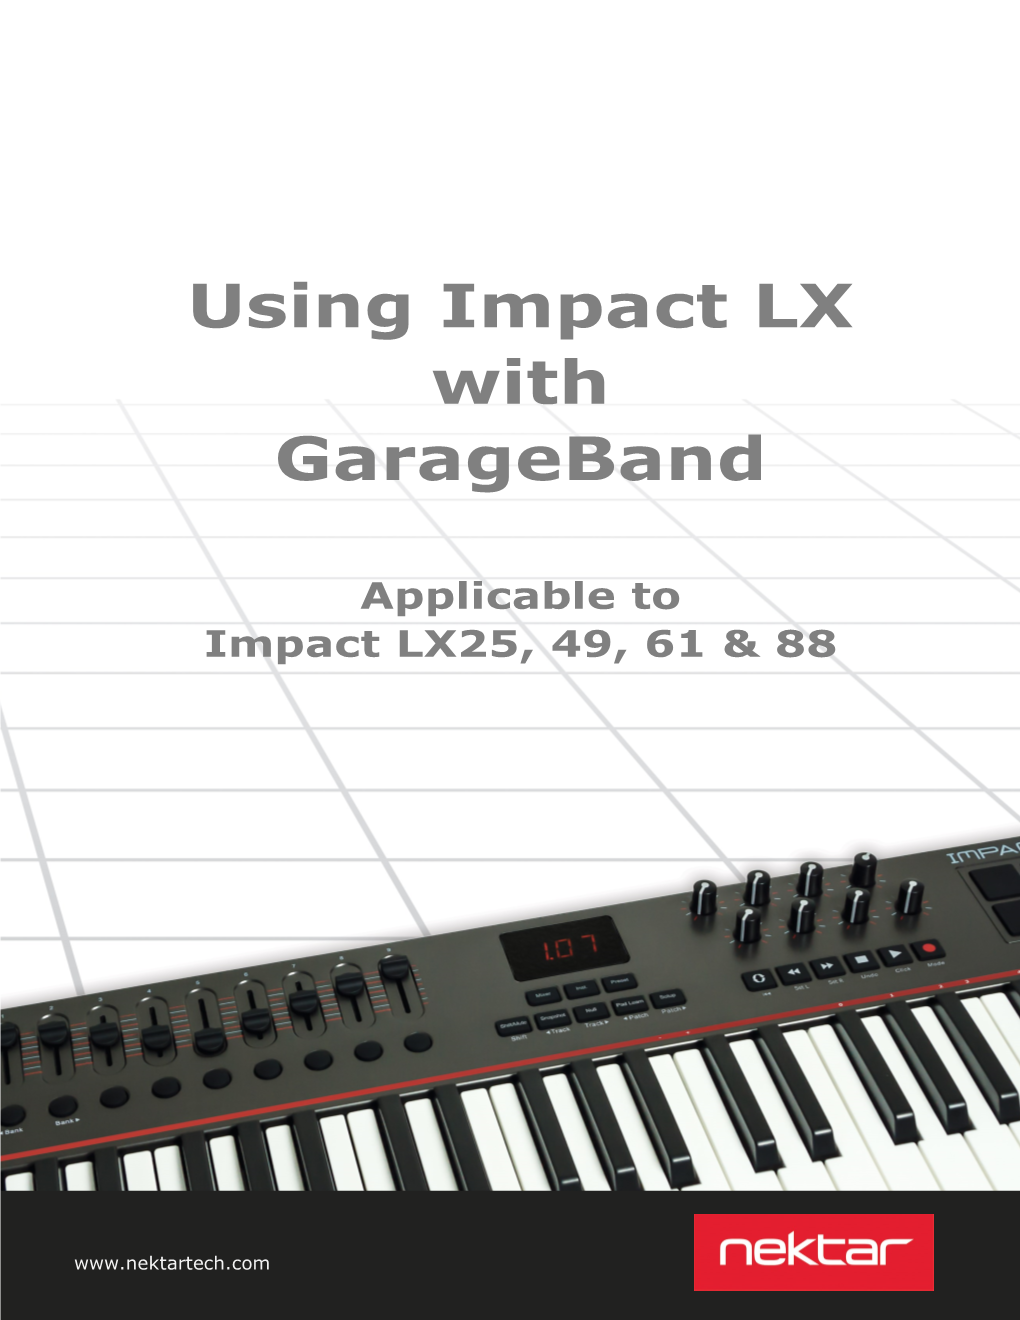 Using Impact LX with Garageband